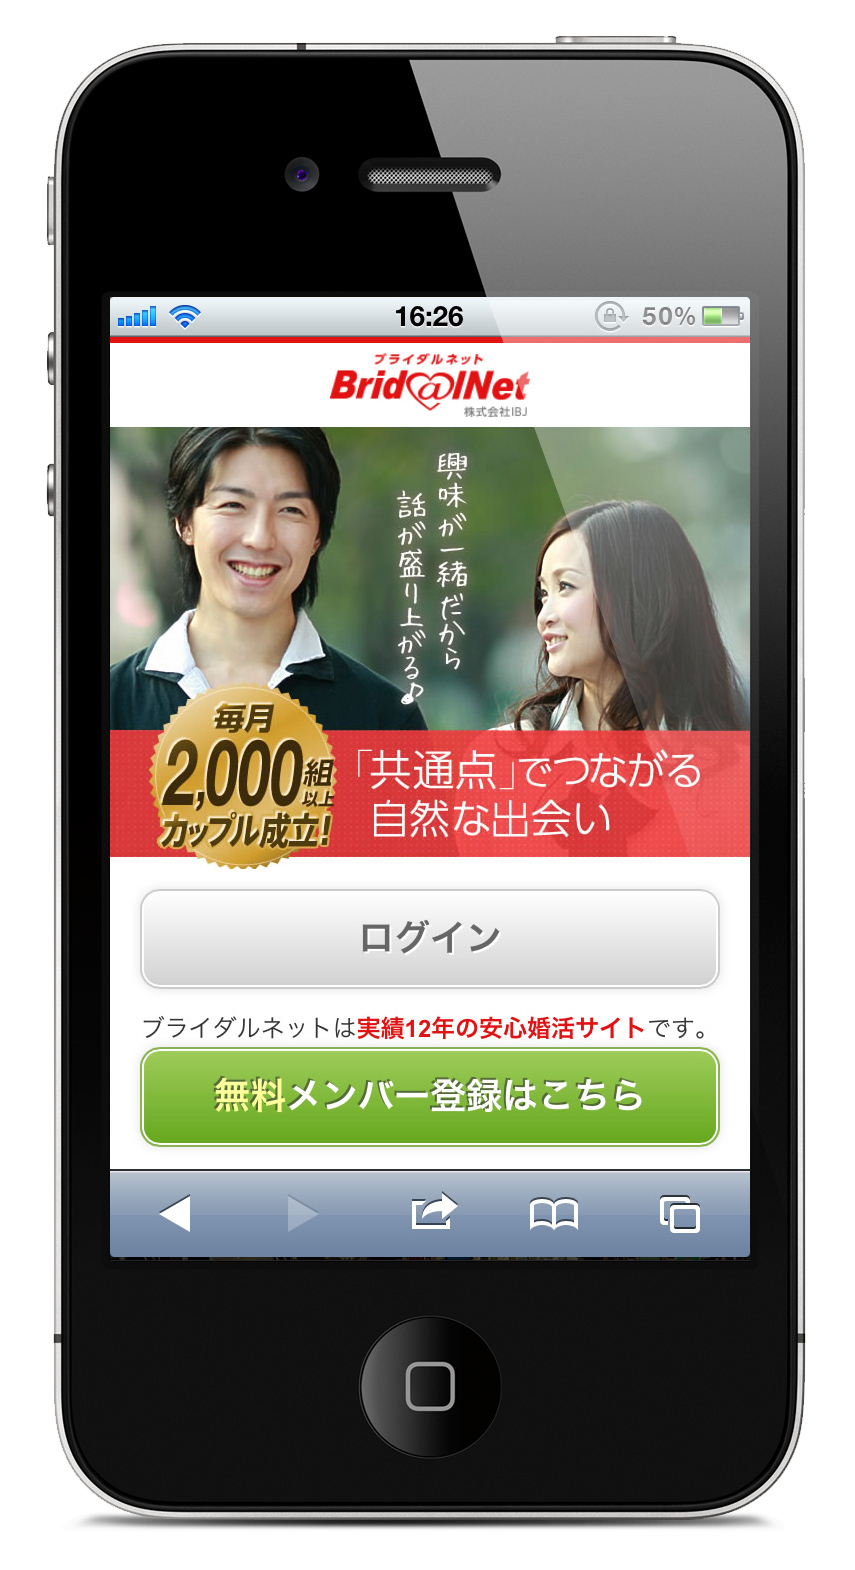 日本で唯一の総合婚活企業 Ibj運営 ソーシャル婚活メディア のブライダルネット 毎月のカップリング数が2 000組を突破 株式会社ibjのプレスリリース